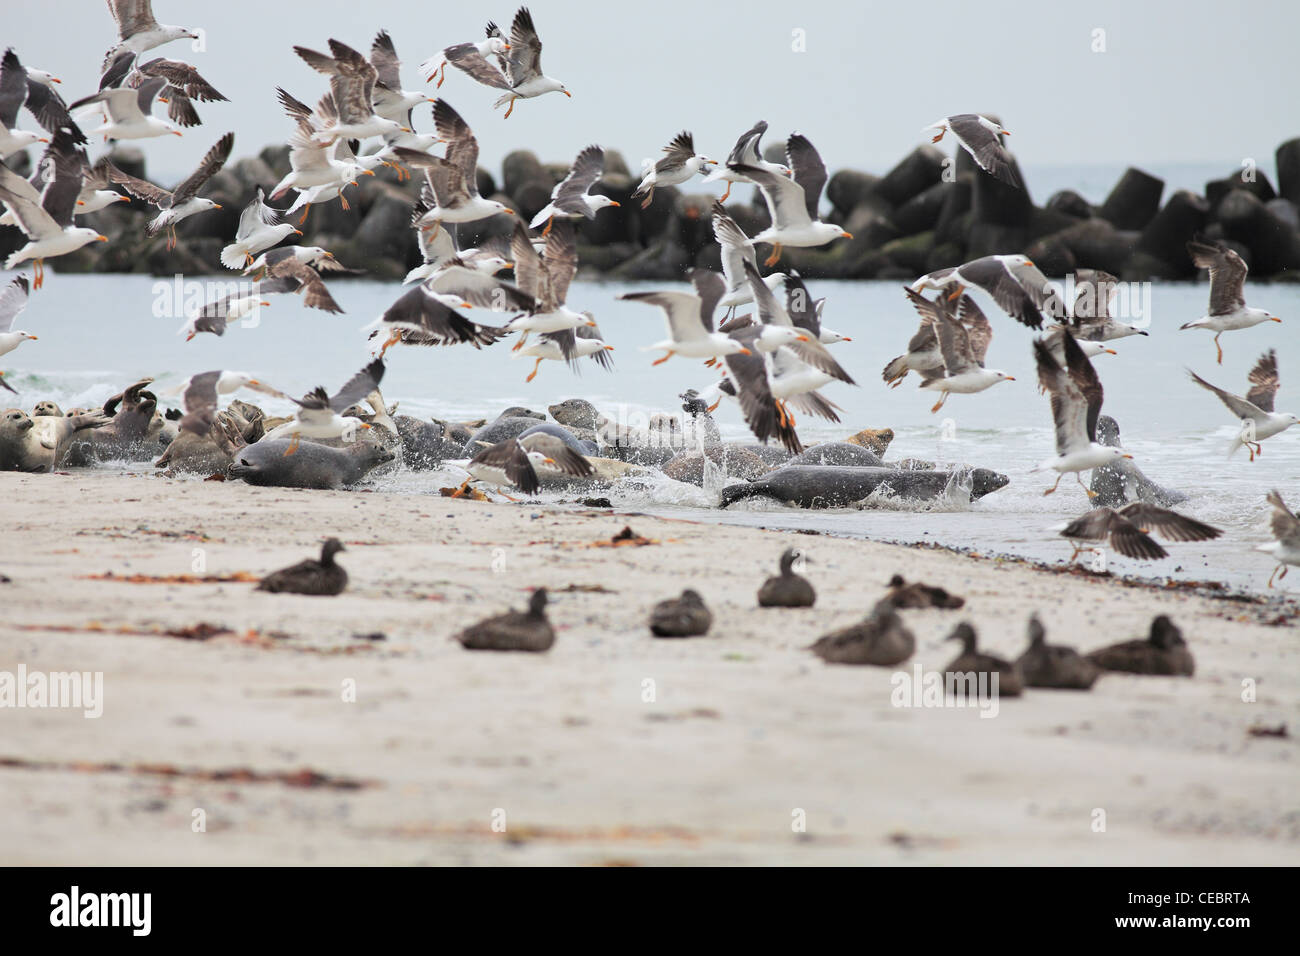 Les goélands, les canards, les phoques gris et les phoques communs sur la plage (Düne) sur l'île de Helgoland, Allemagne Banque D'Images